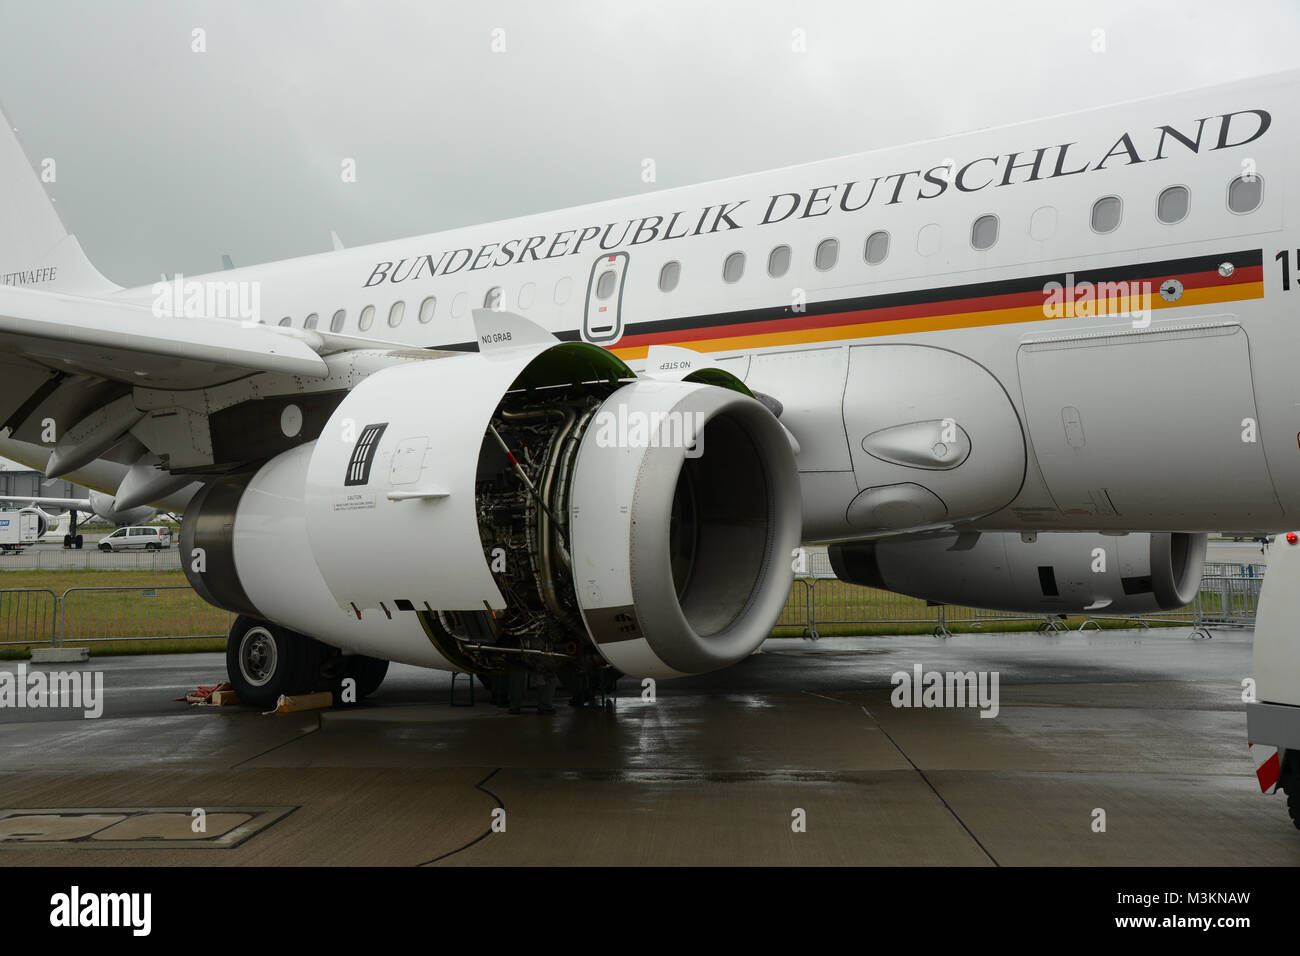 Un Regierungsmaschine Triebwerke die der319CJ der Luftwaffe von Airbus. Verfuegt ueber das Flugzeug Typ 2 Triebwerke des CFM56-5B7. Ausgestellt wurde die Maschine auf der ILA International Airshow 2016 à Berlin. Banque D'Images